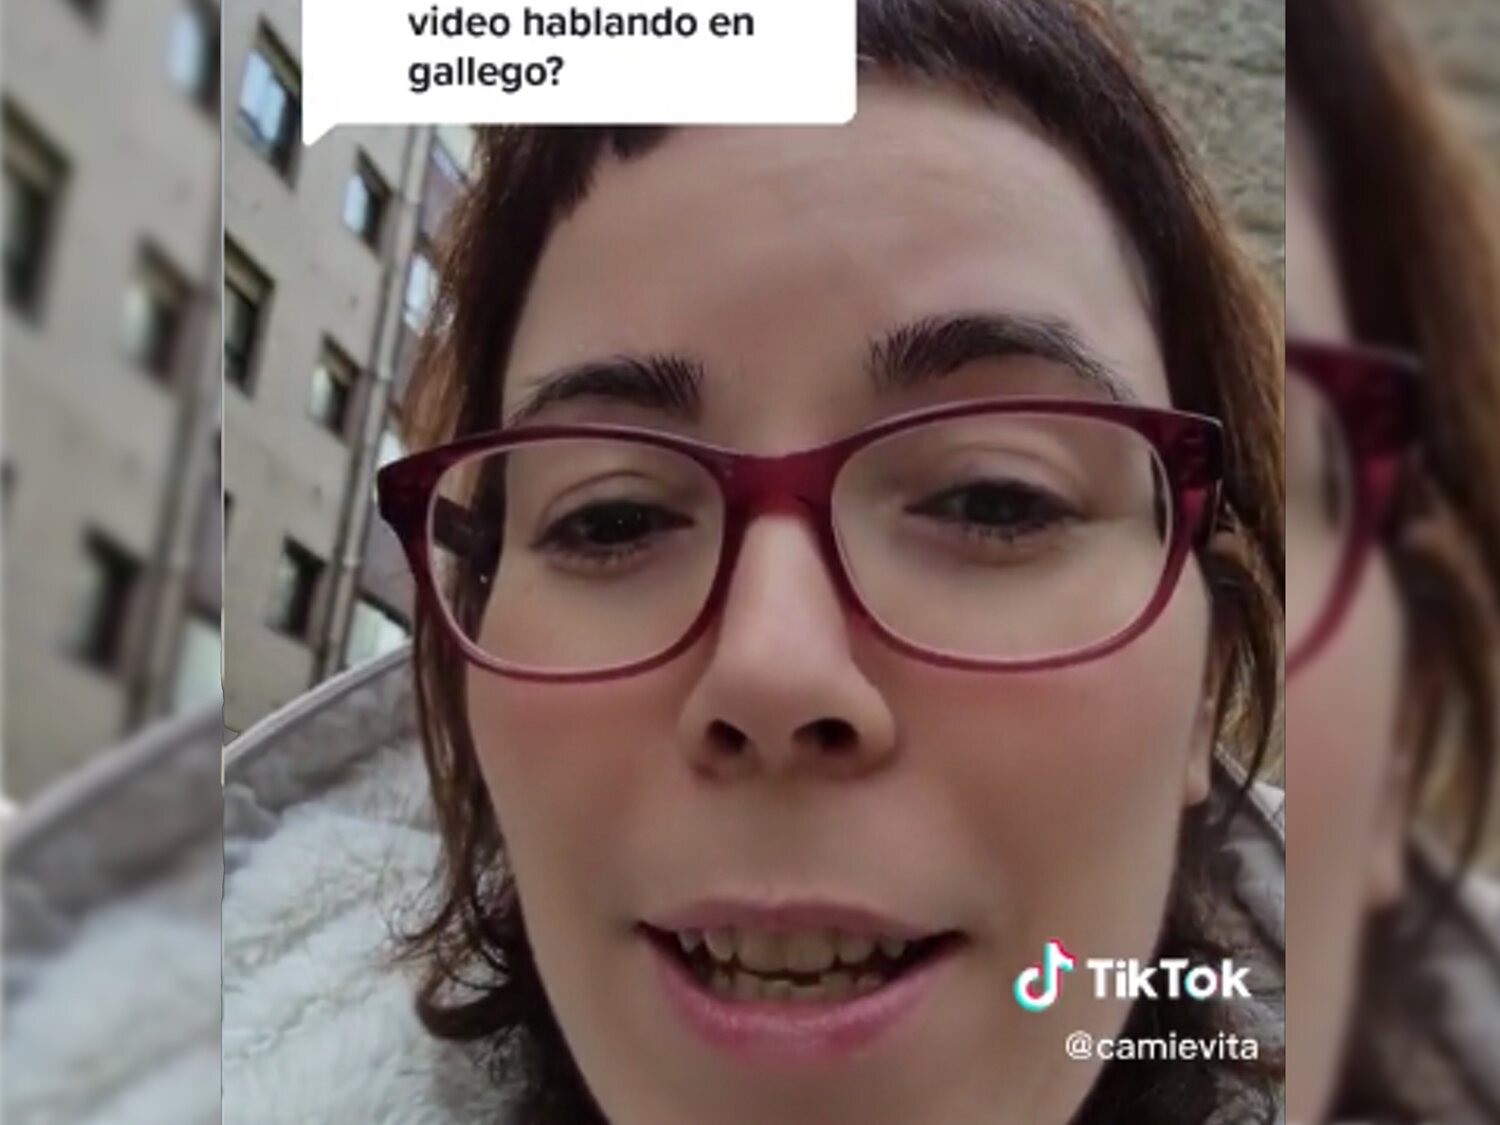 Las polémicas palabras de una tiktoker sobre el gallego: "Solo lo habla la gente de pueblo"